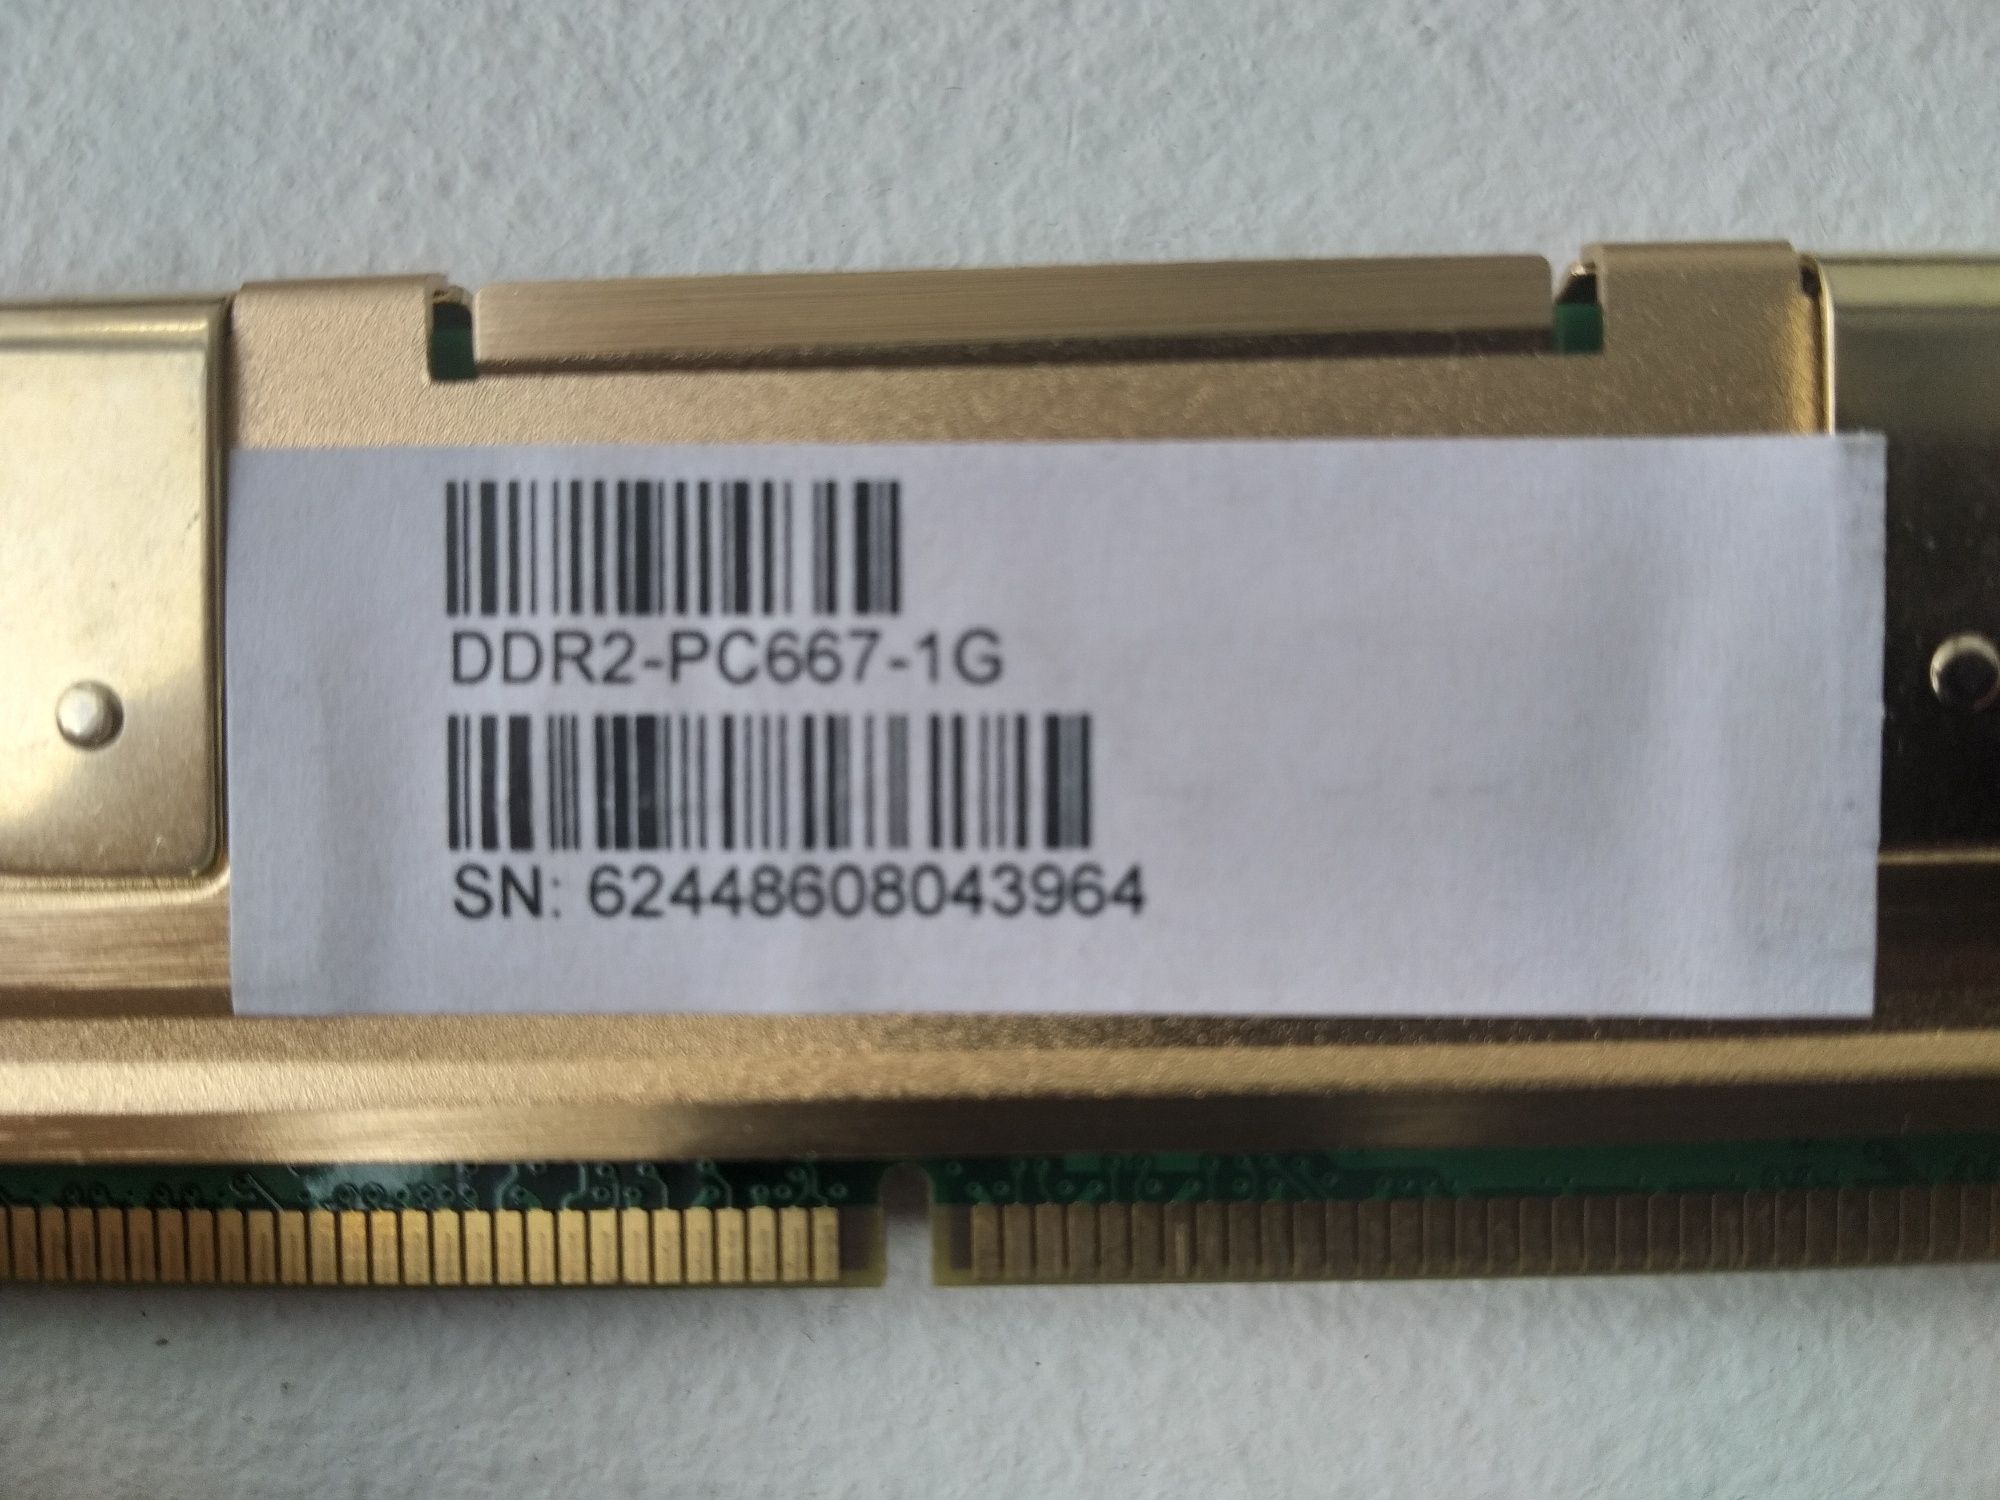 Memórias Apacer PC2-5300 CL5 DDR-2